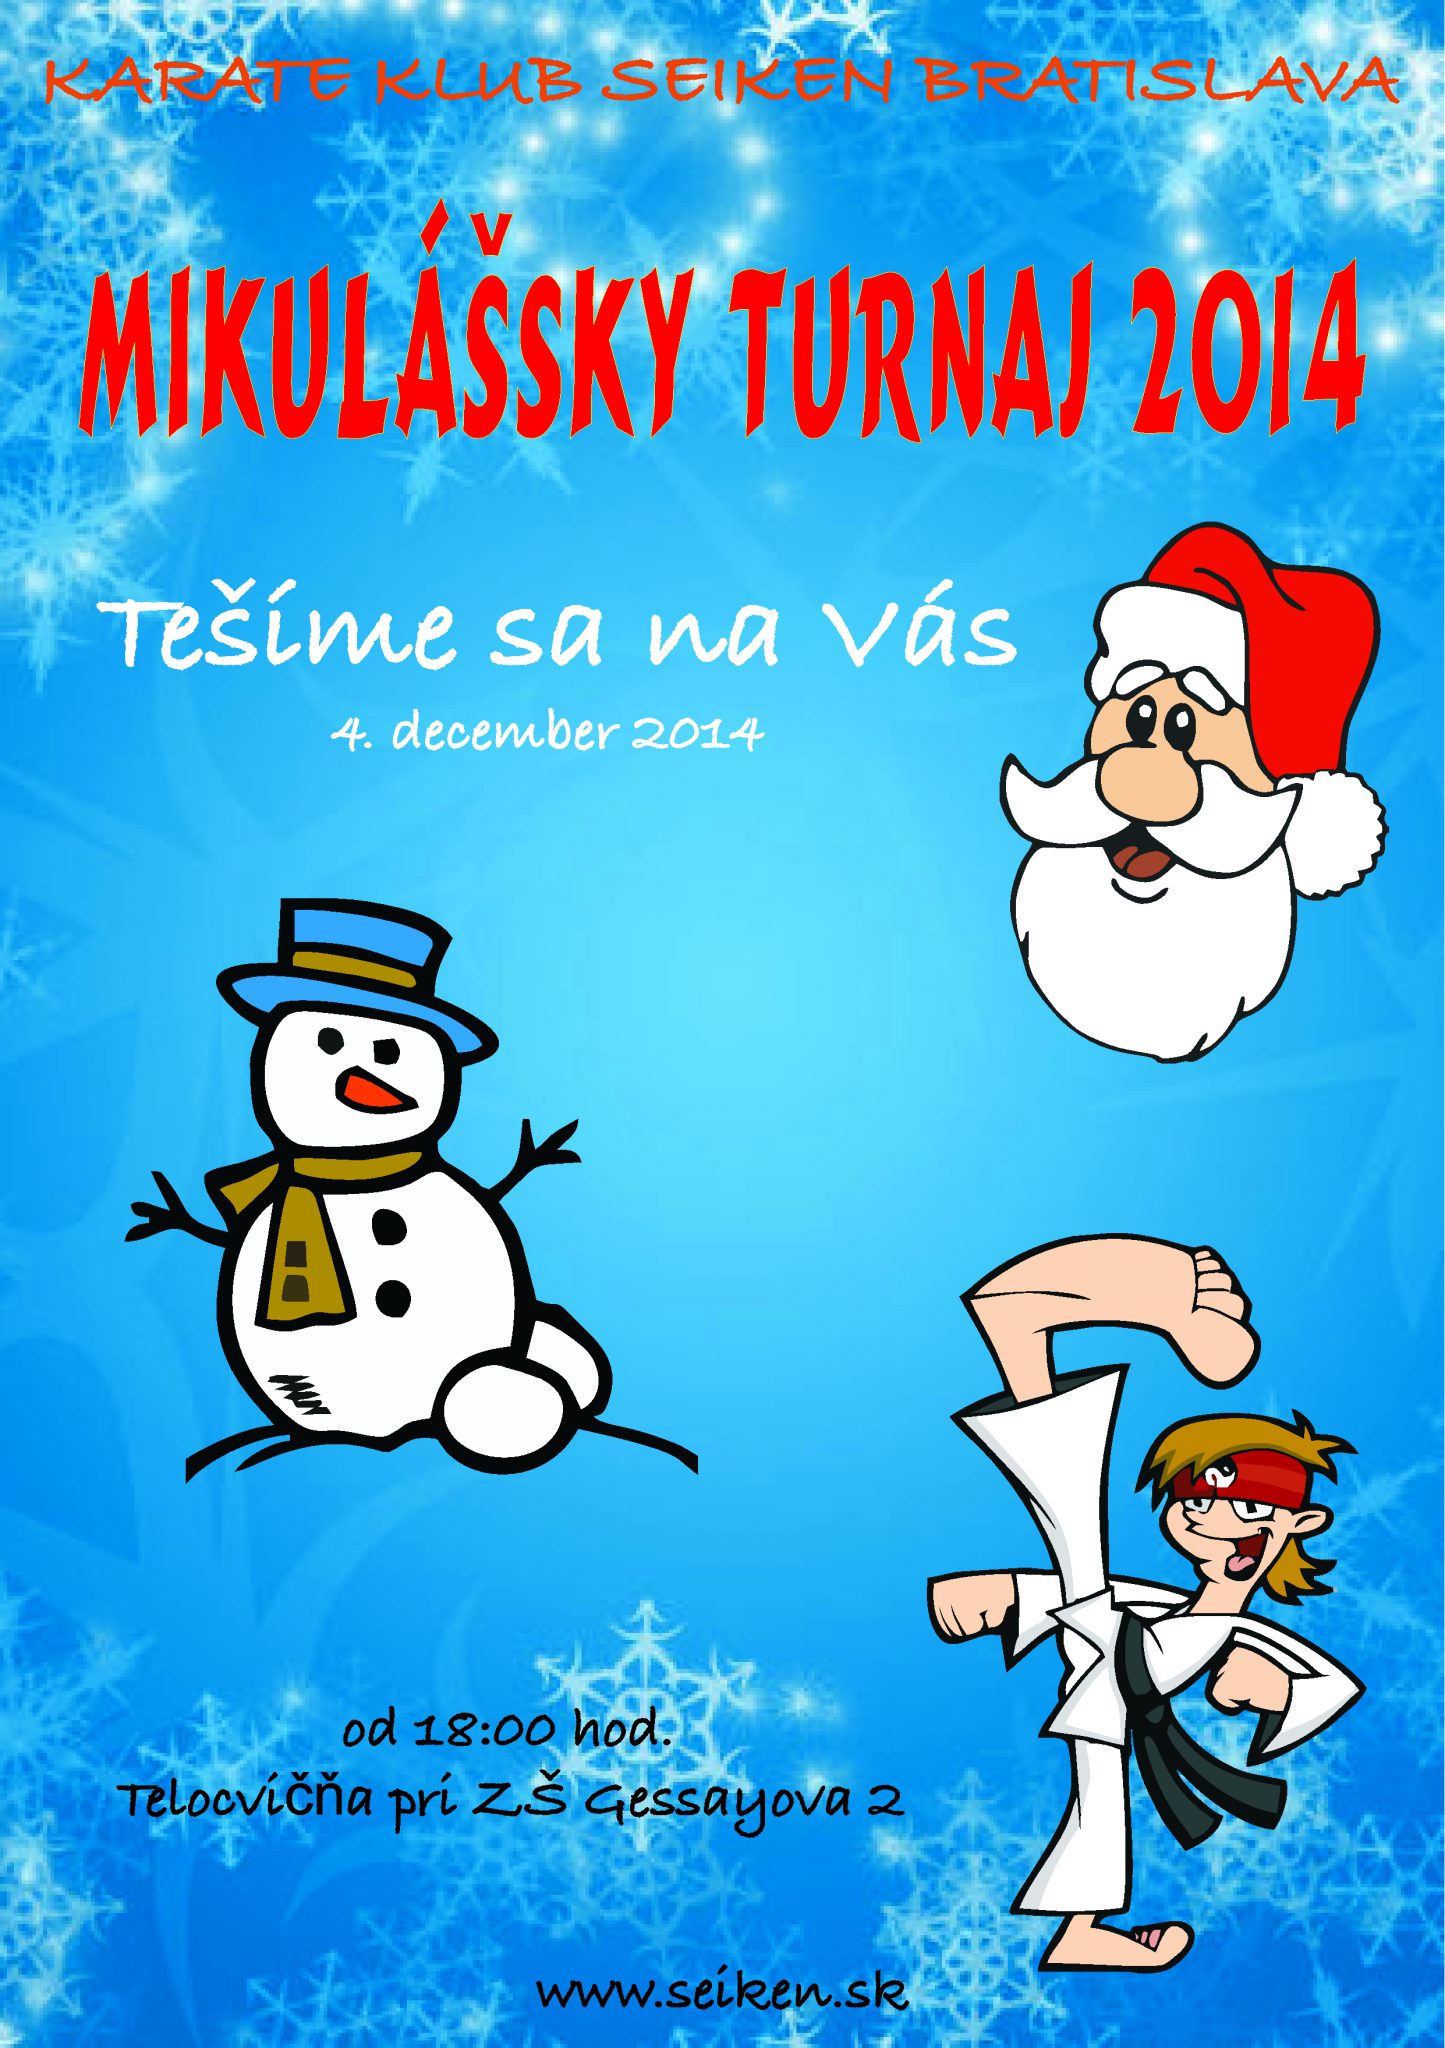 mikulassky_turnaj_2014